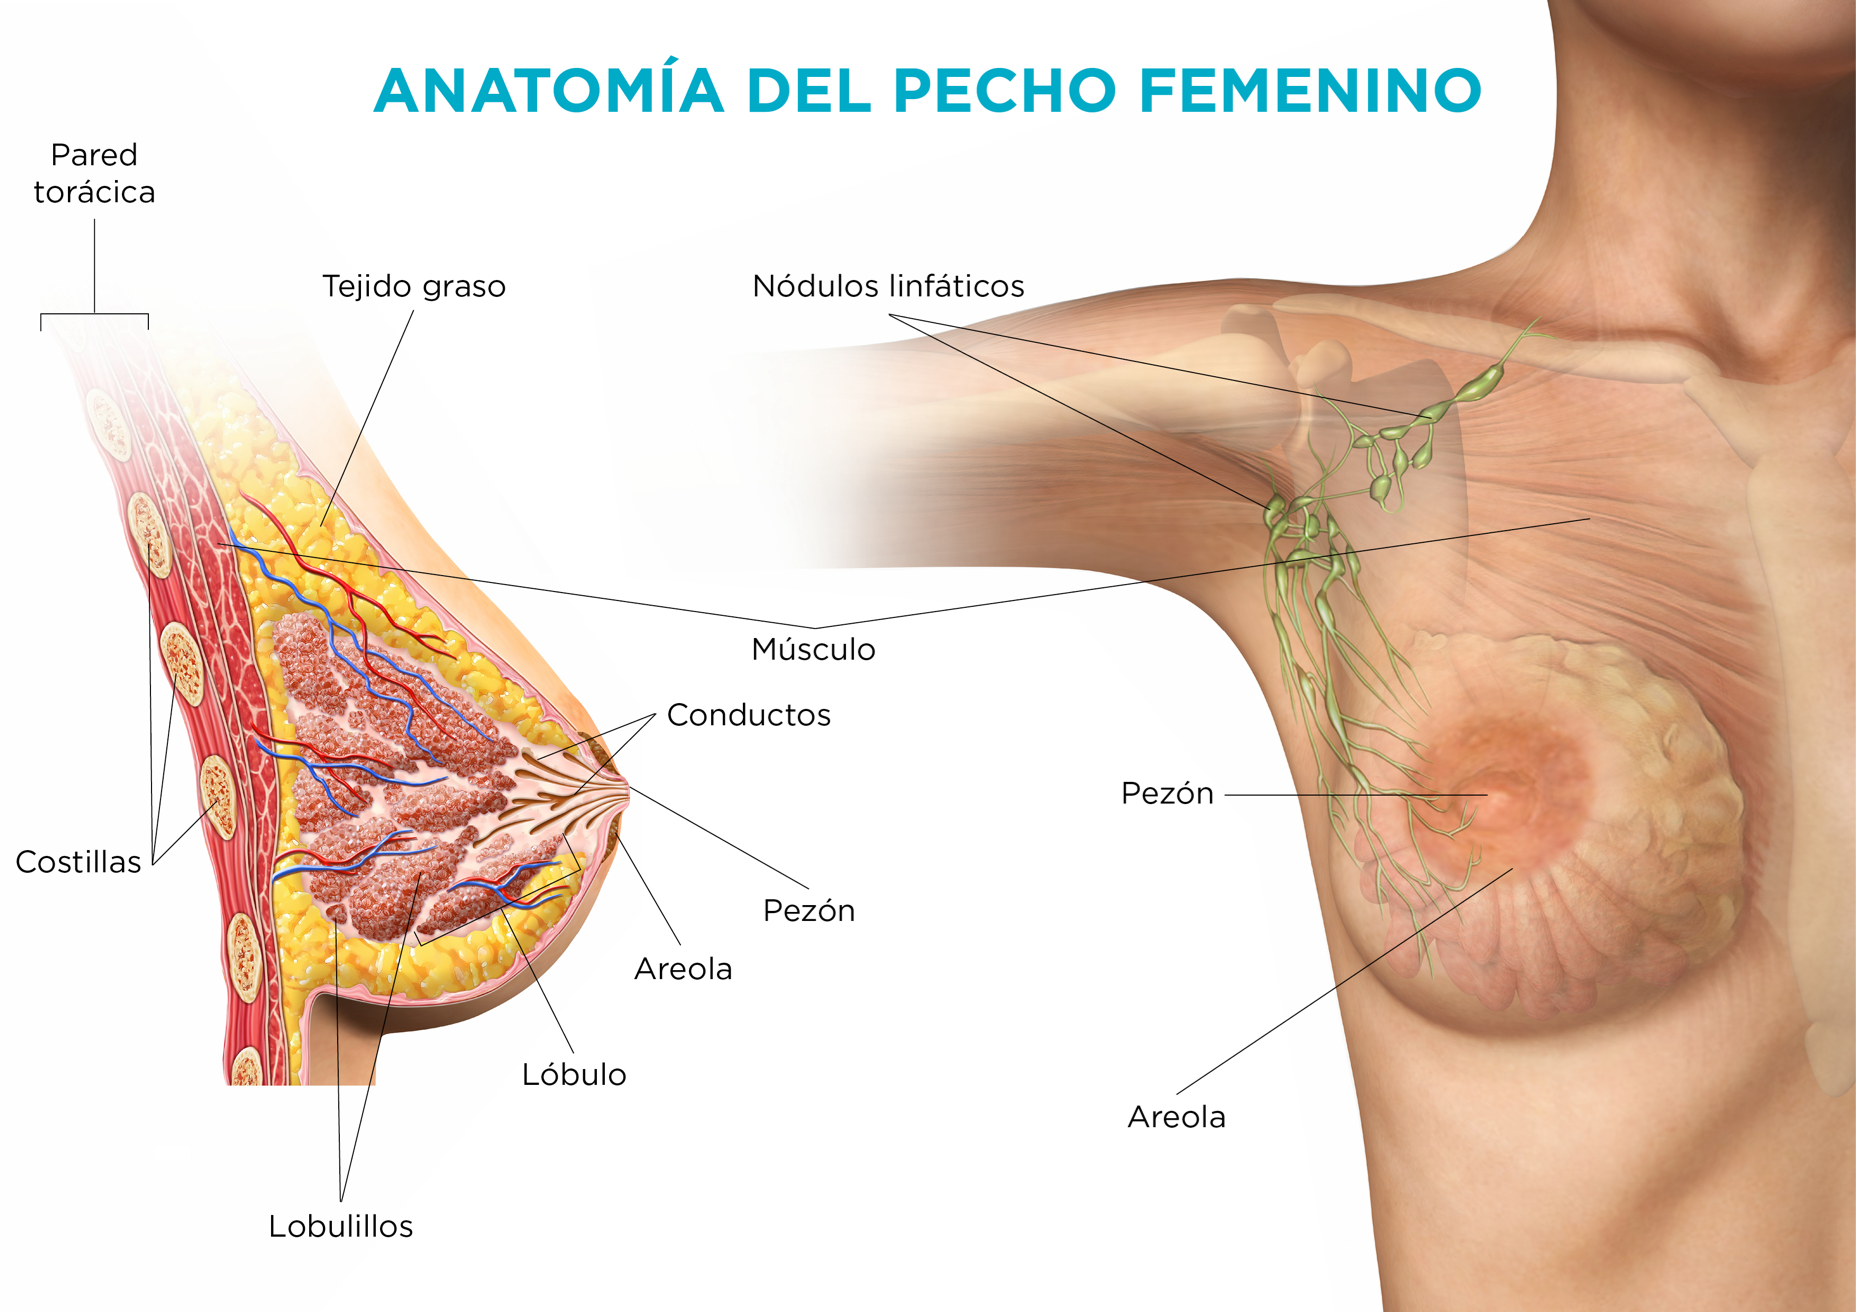 Infografía de la anatomía del pecho femenino humano con la explicación de cada una de las partes que conforman el seno